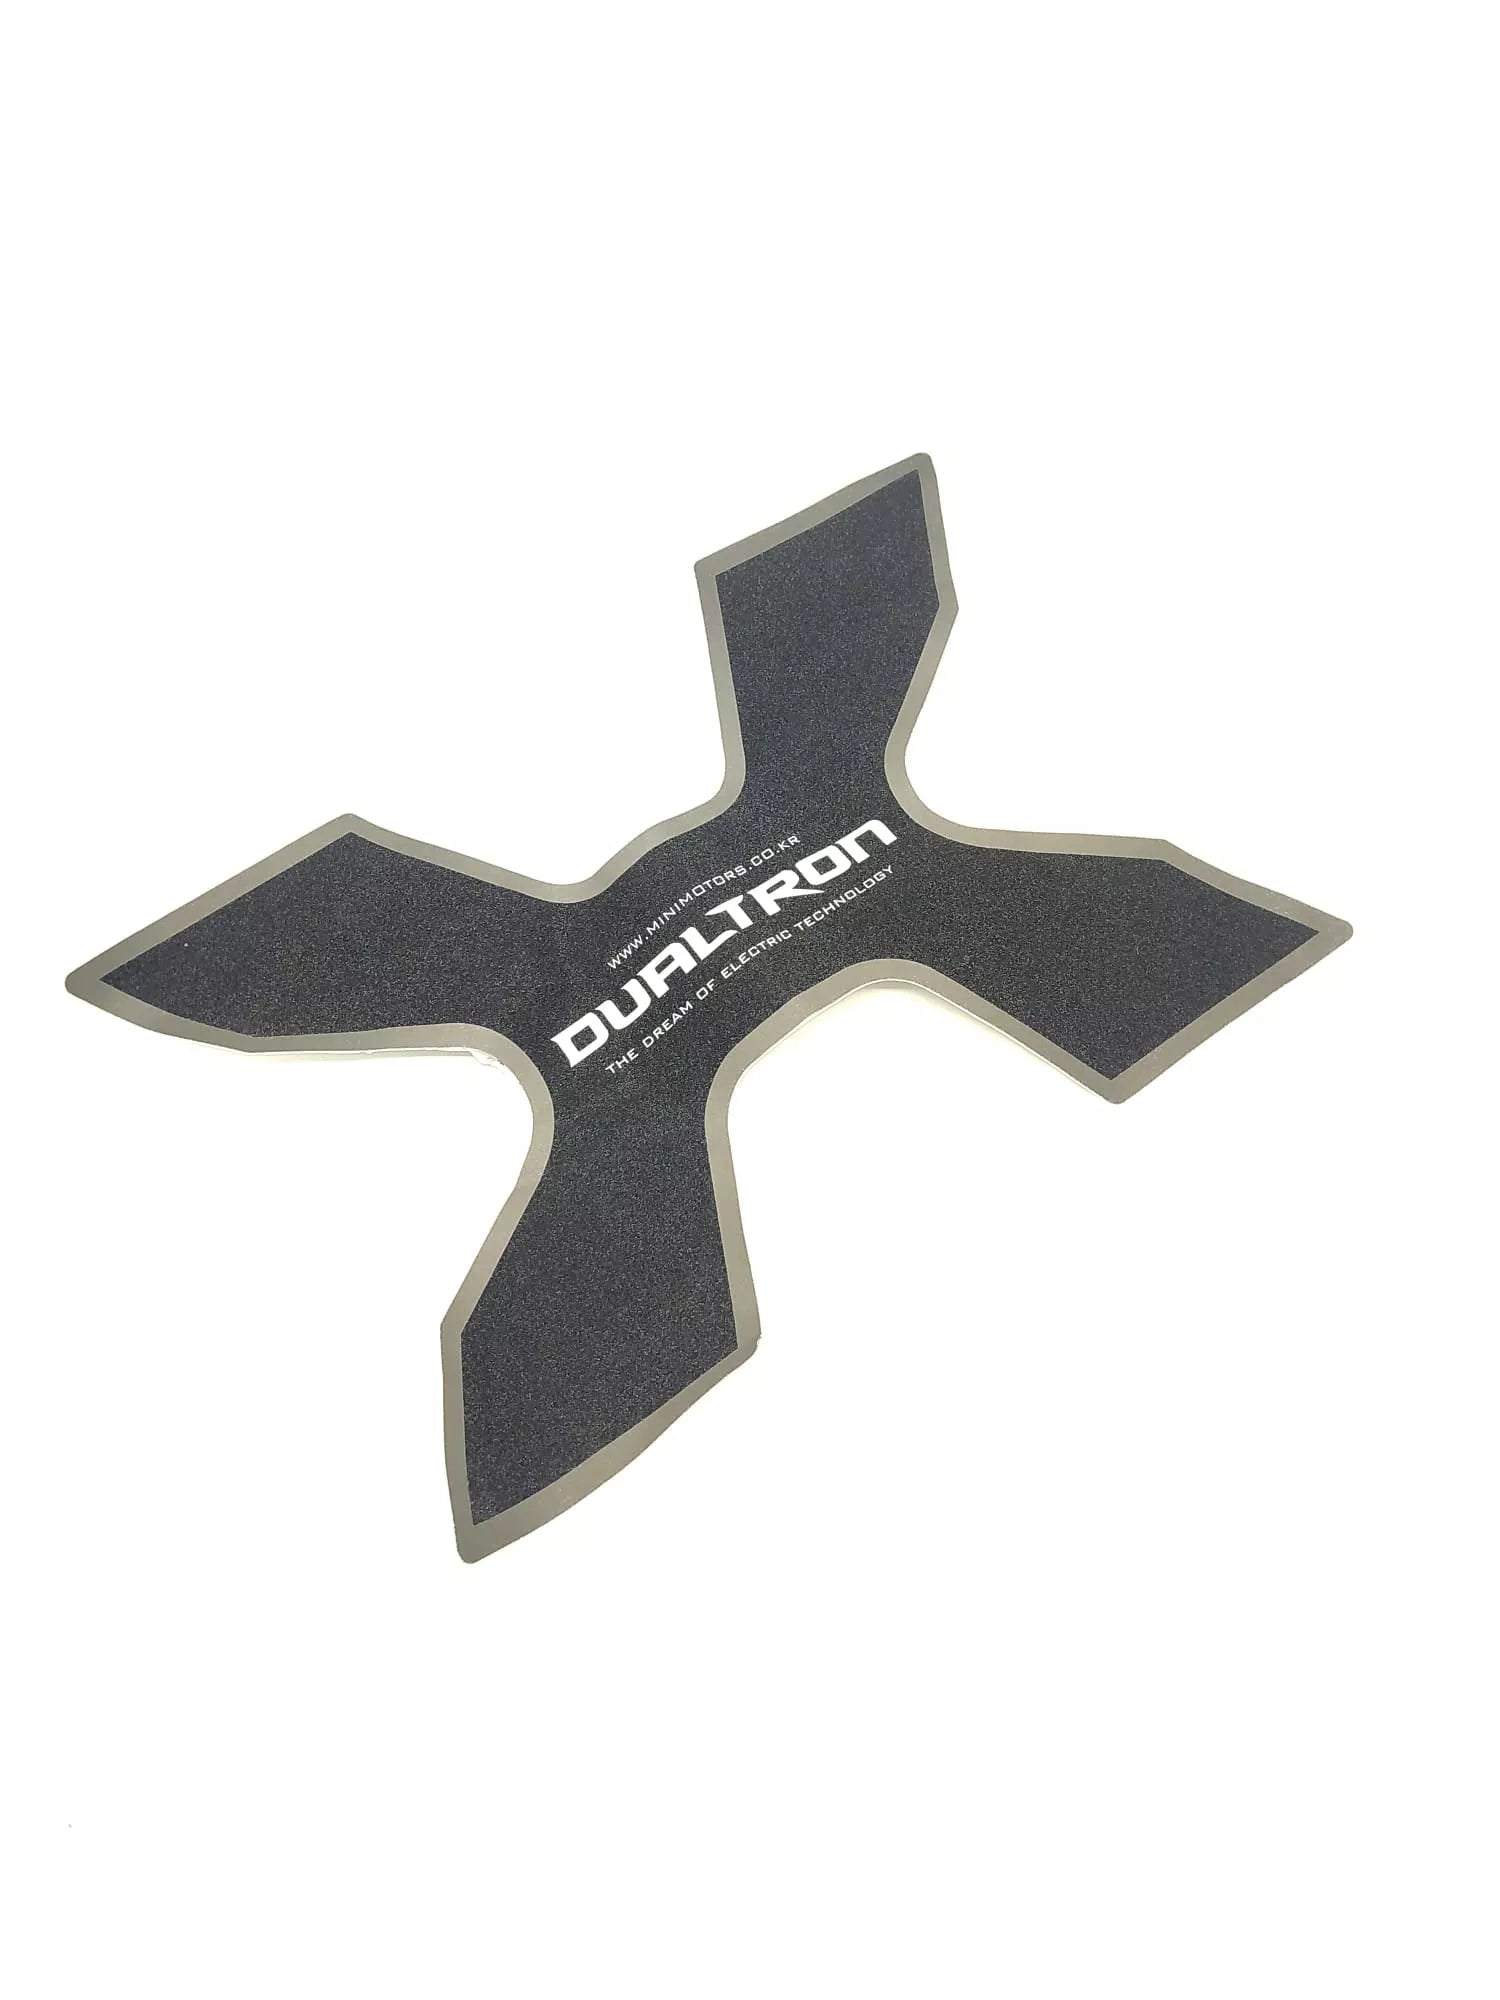 Grip du deck - Dualtron X - Excellent Pièces détachées par Dualtron - Seulement €24.99! Acheter maintenant sur Nexyo.fr